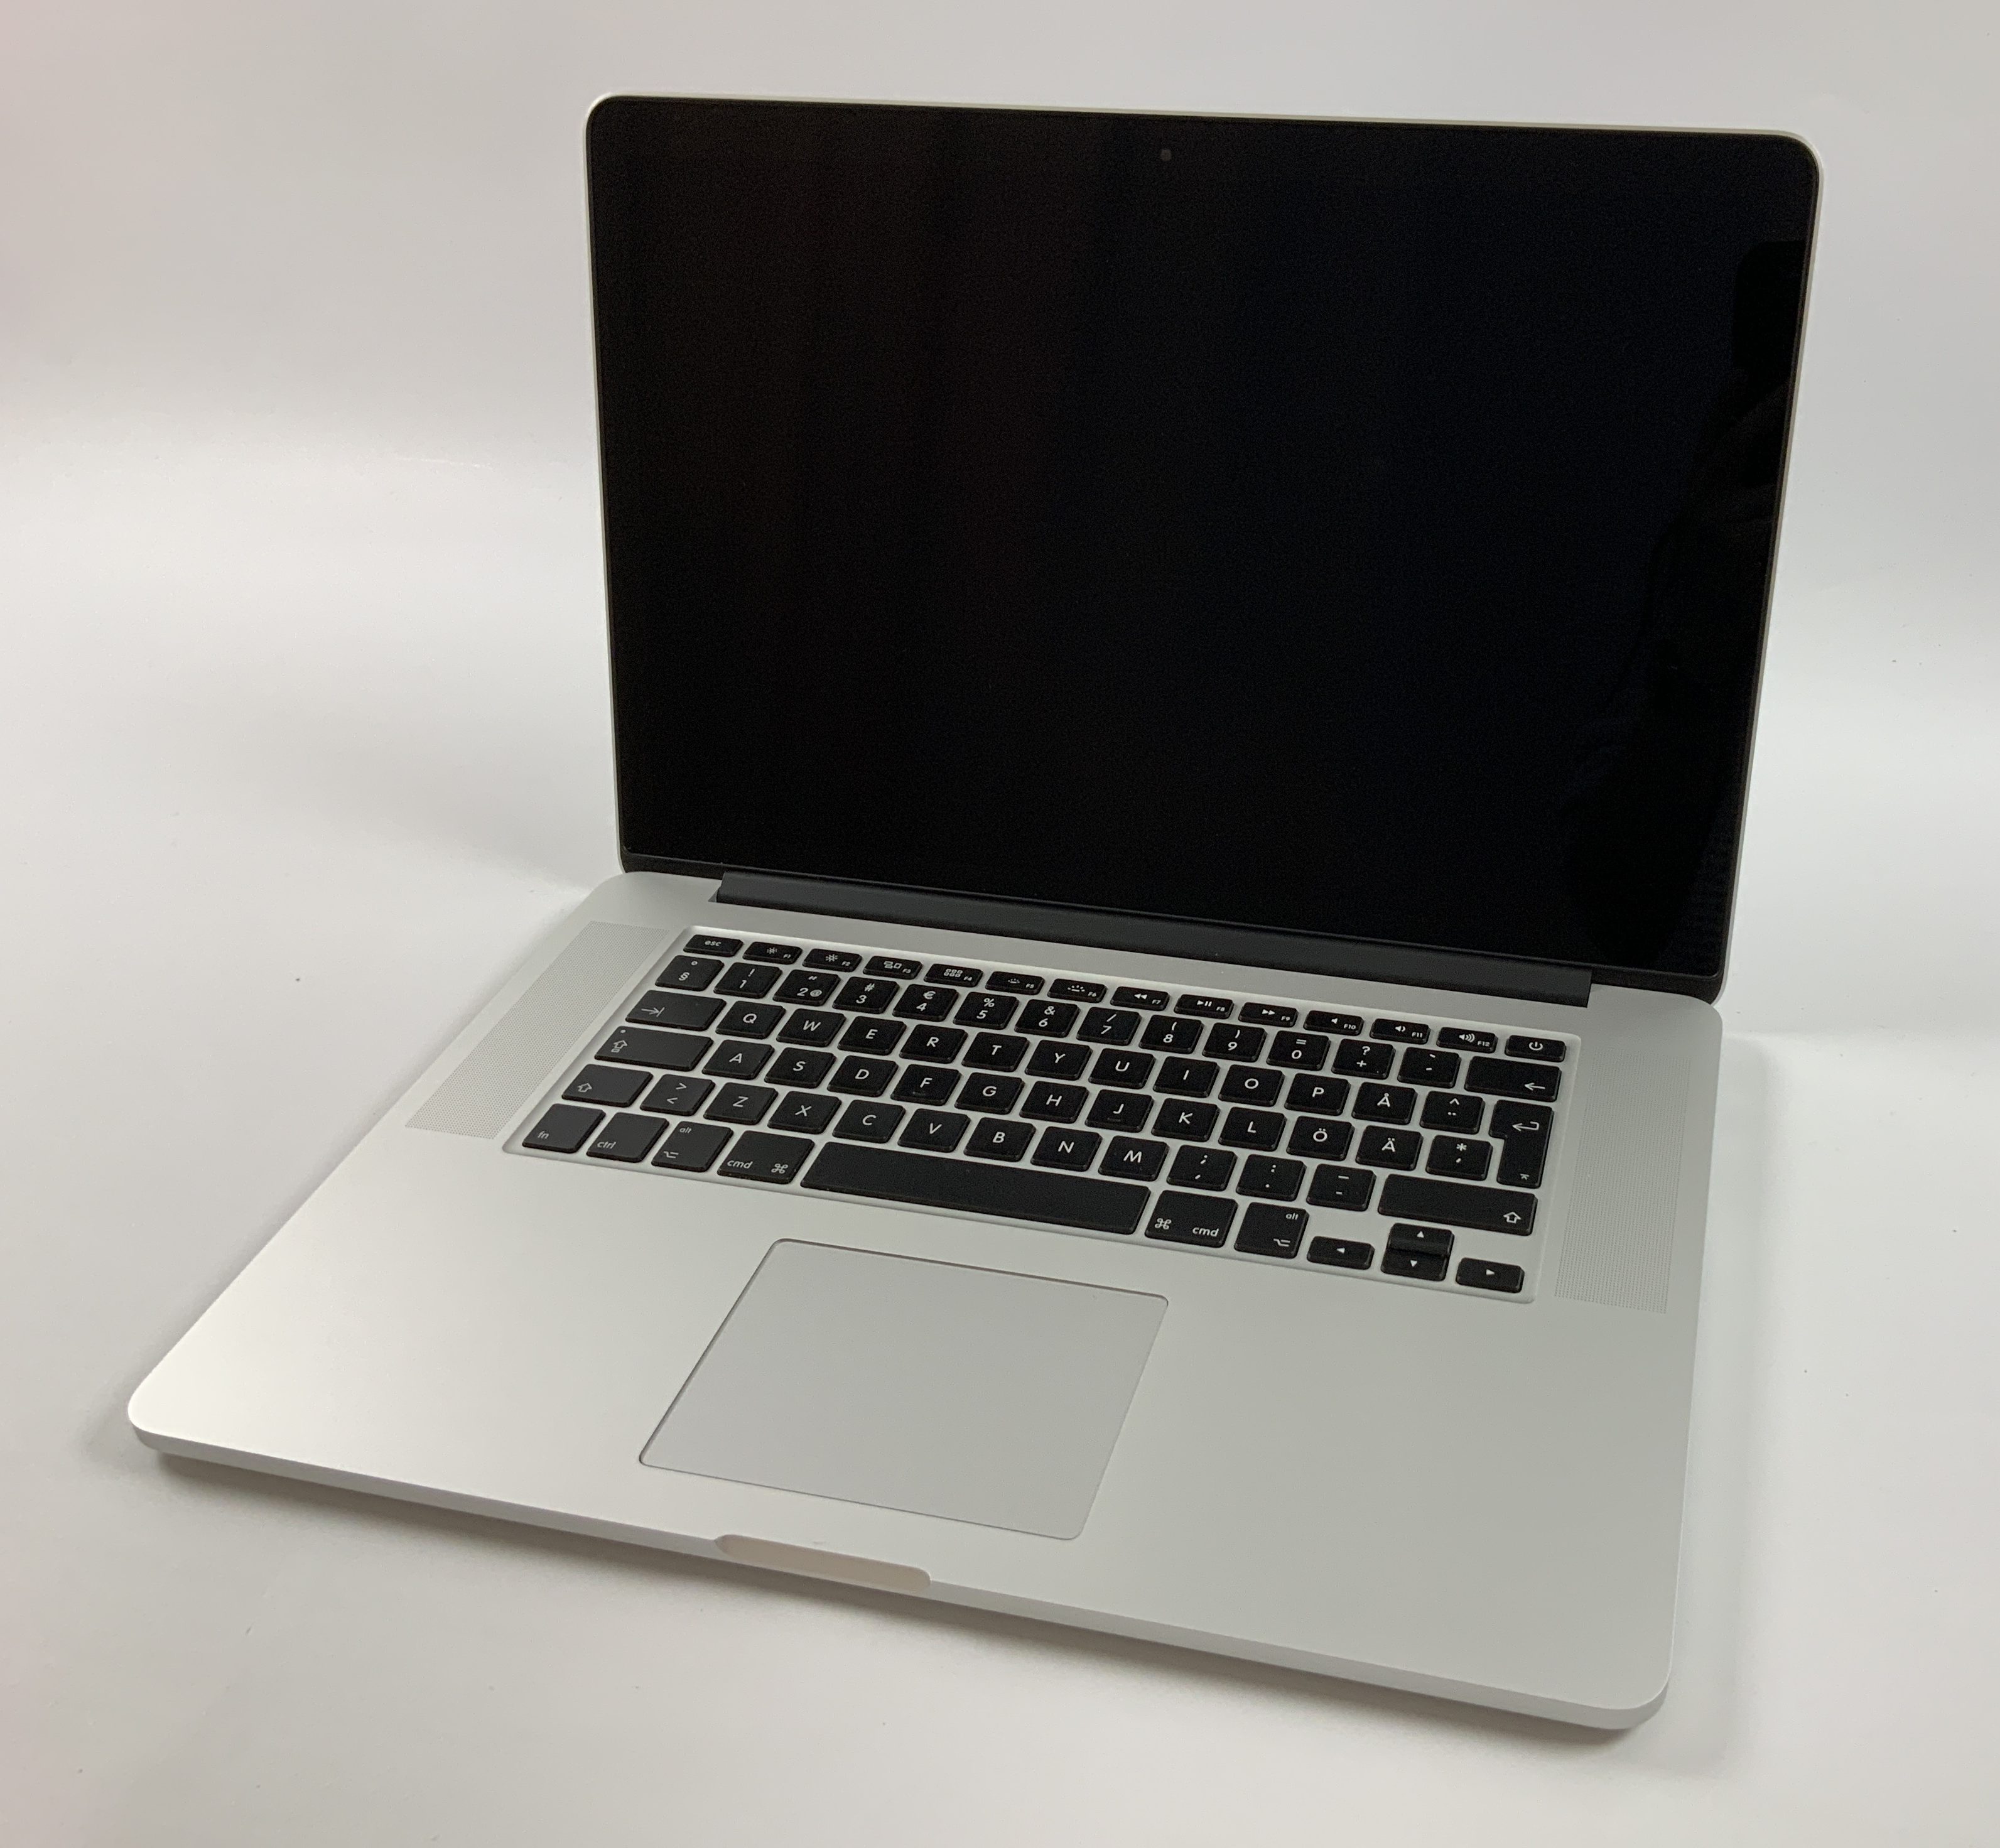 MacBook Pro Retina 15" Mid 2015 (Intel Quad-Core i7 2.2 GHz 16 GB RAM 256 GB SSD), Intel Quad-Core i7 2.2 GHz, 16 GB RAM, 256 GB SSD, Kuva 1